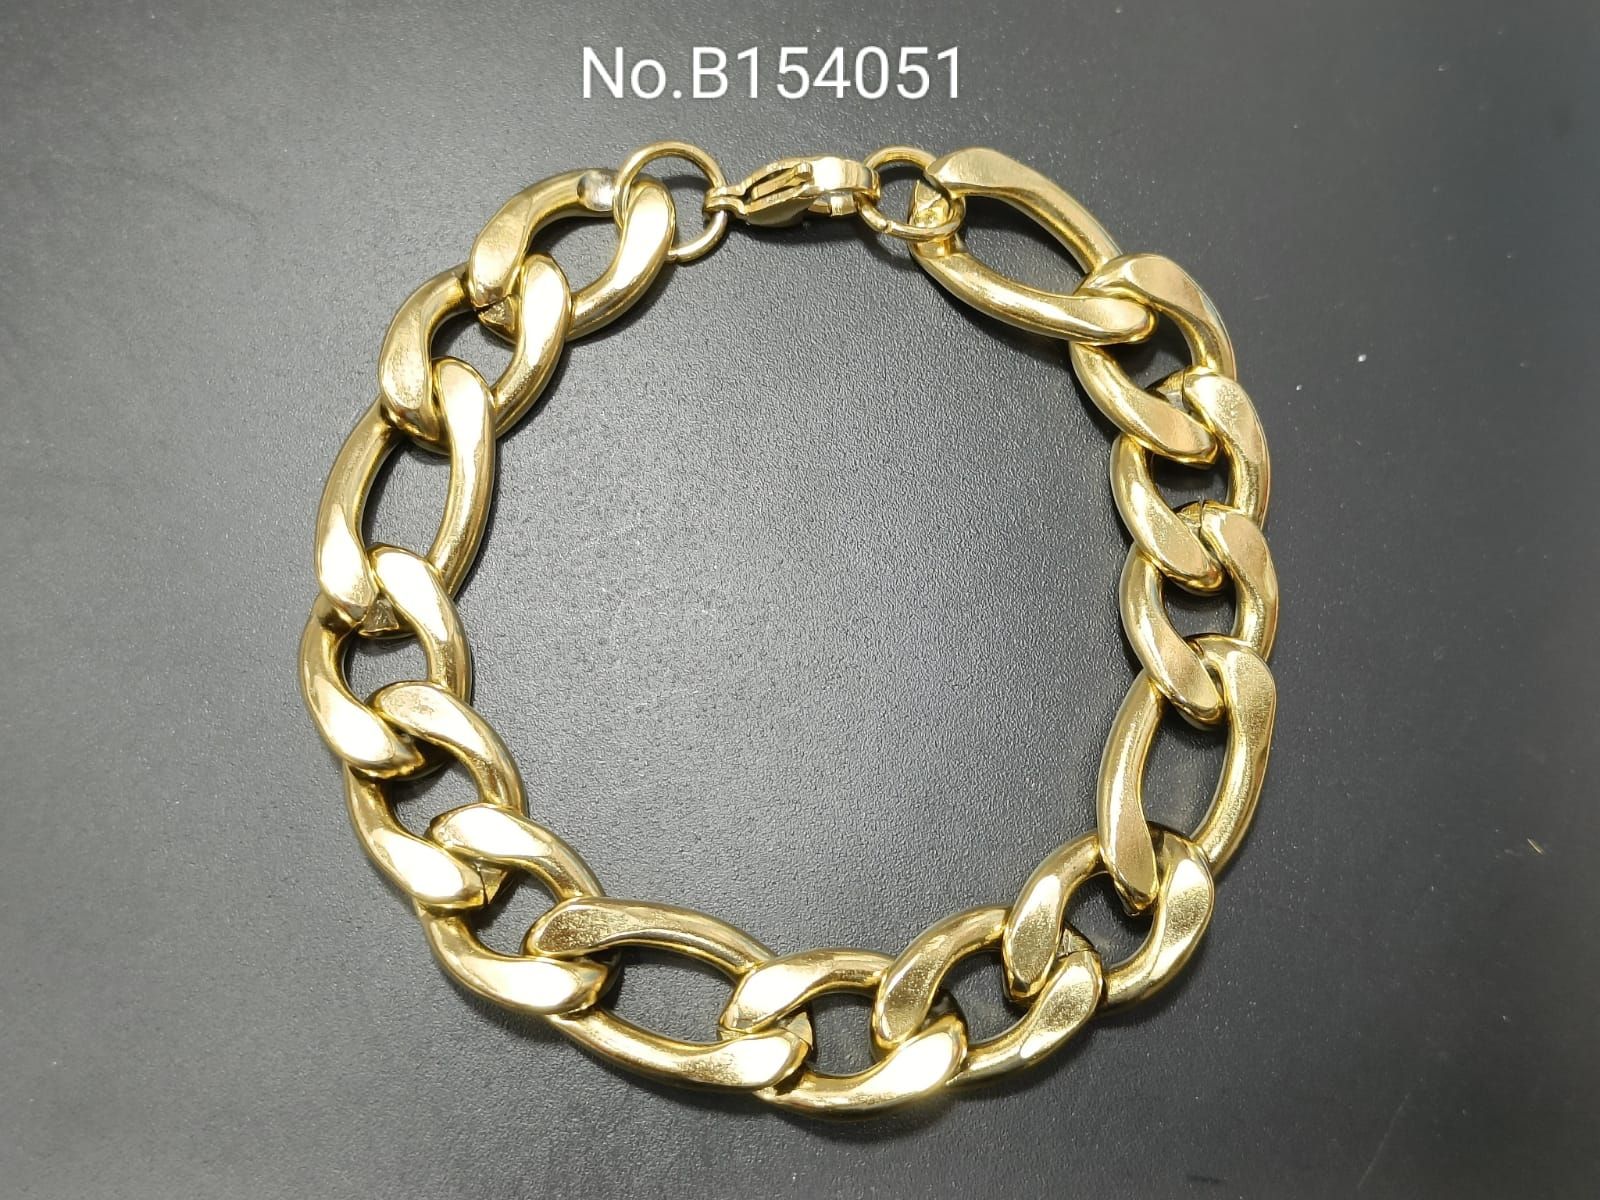 10K Hollow Gold Beveled Figaro Chain Bracelet - 7.5